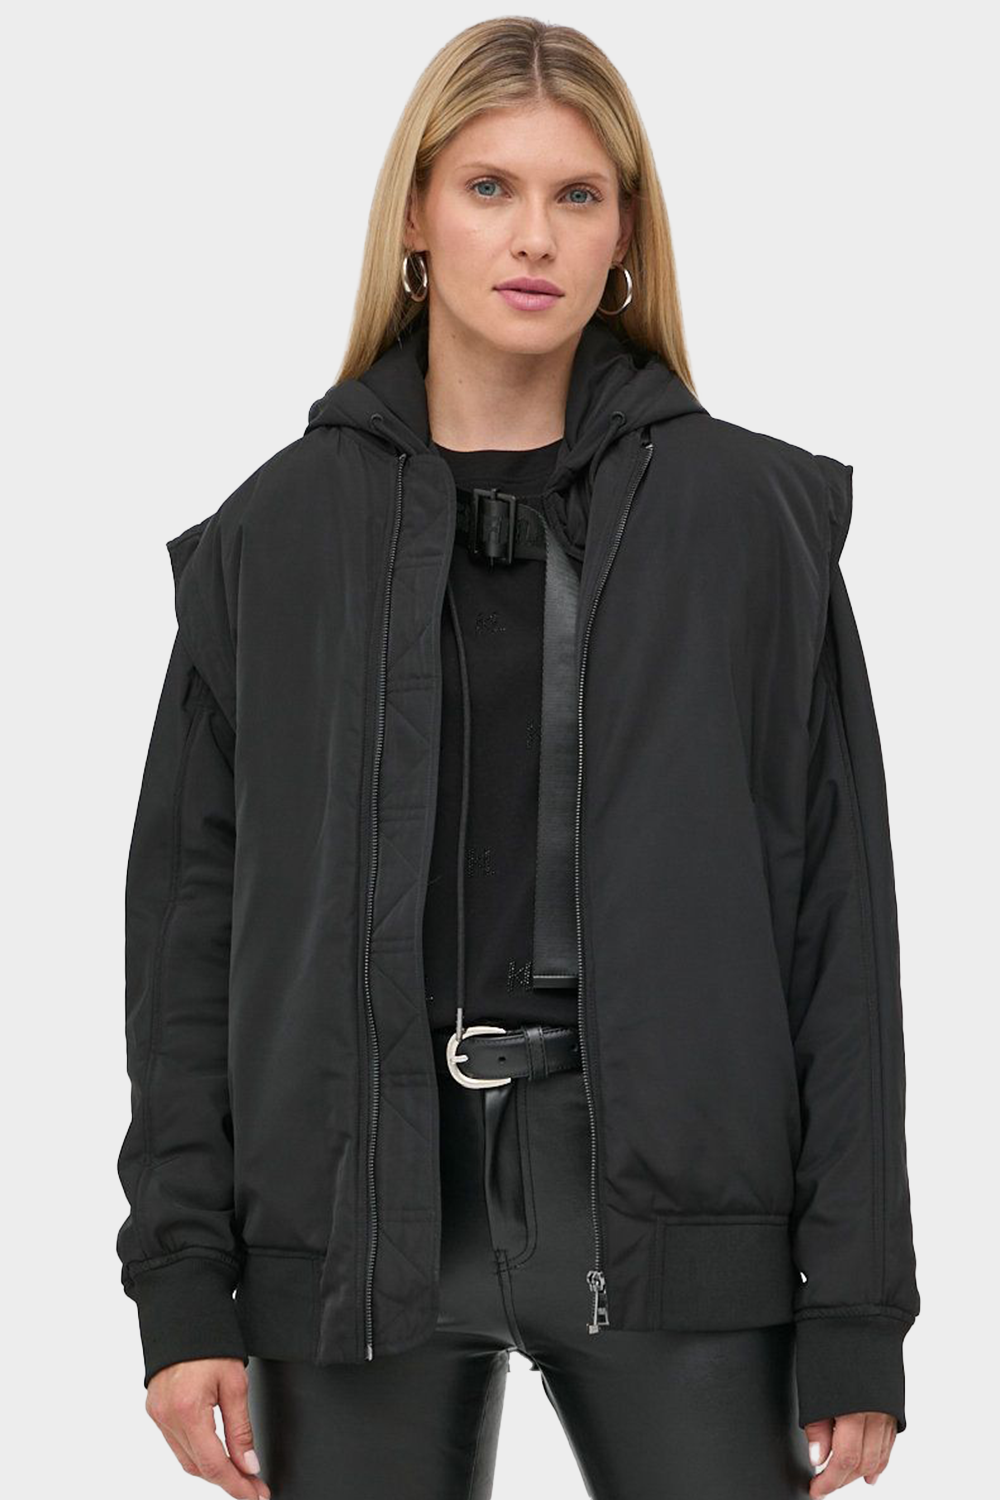 מעיל לנשים בצבע שחור KARL LAGERFELD Vendome online | ונדום .